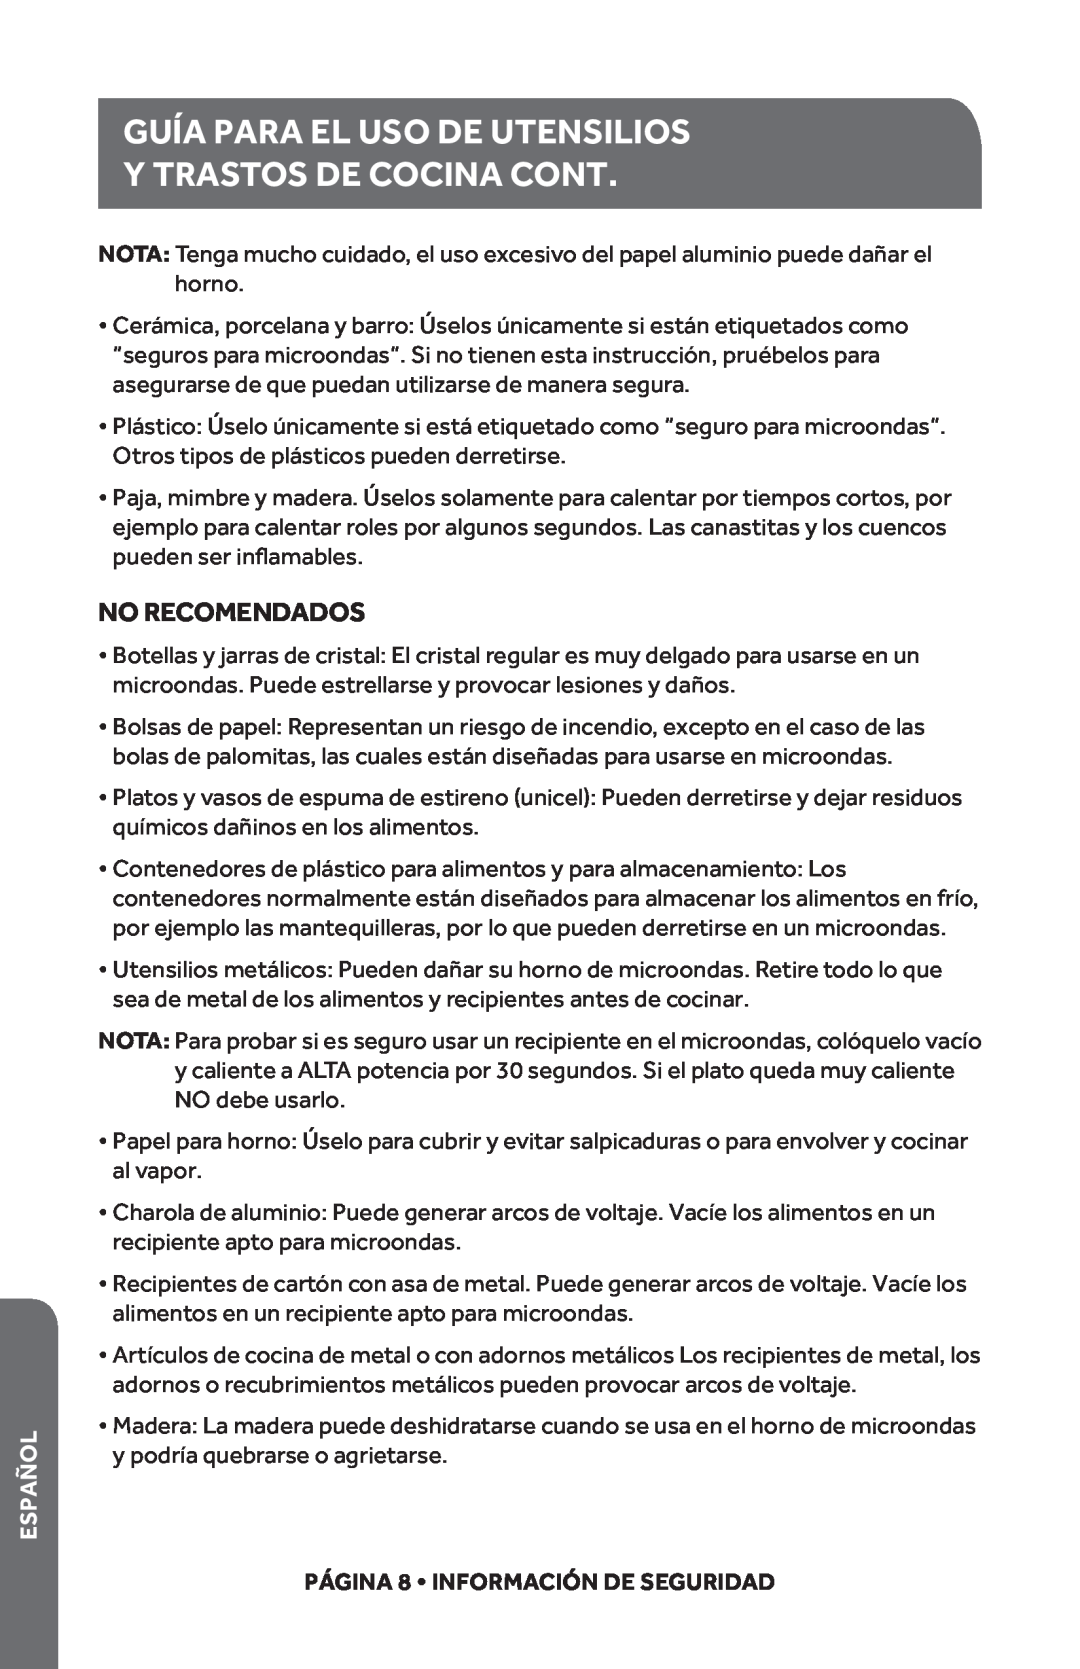 Haier HMC1685SESS user manual Y TRASTOS DE COCINA Cont, Guía Para El Uso De Utensilios, No Recomendados, Español 